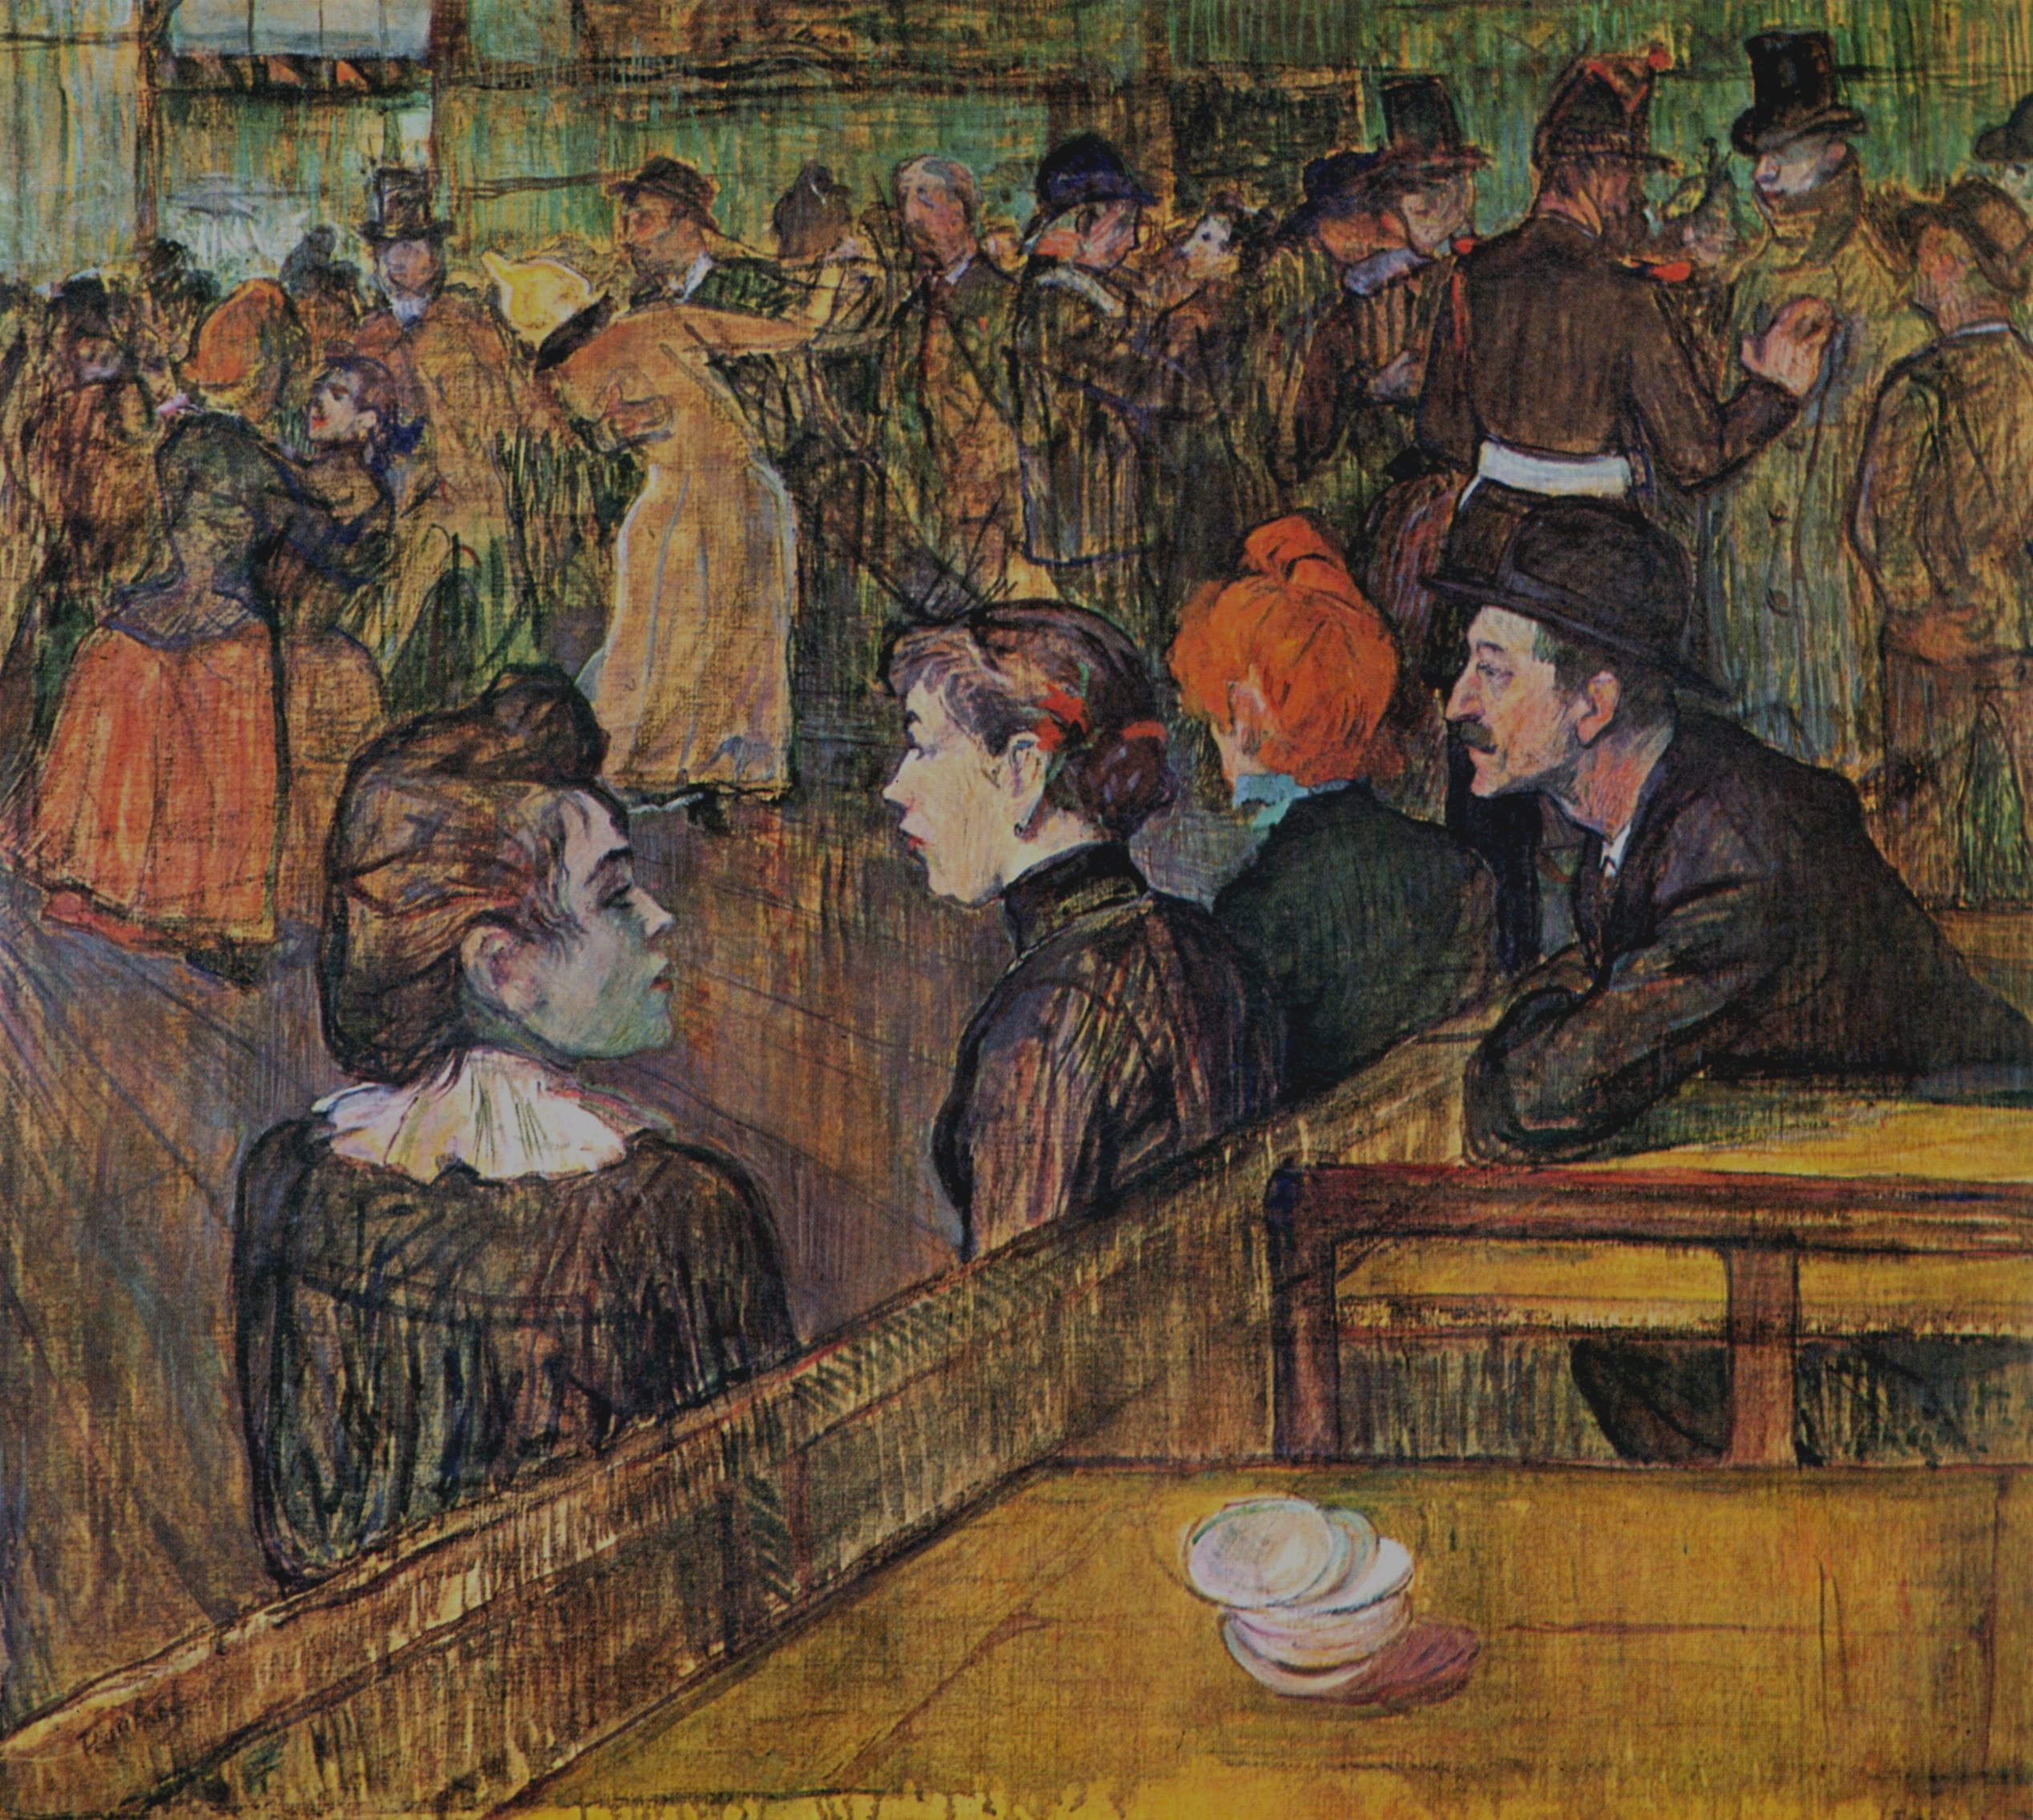 Ples v Moulin de la Galette by Henri de Toulouse-Lautrec - 1889 - 88.5 x 101.3 cm 